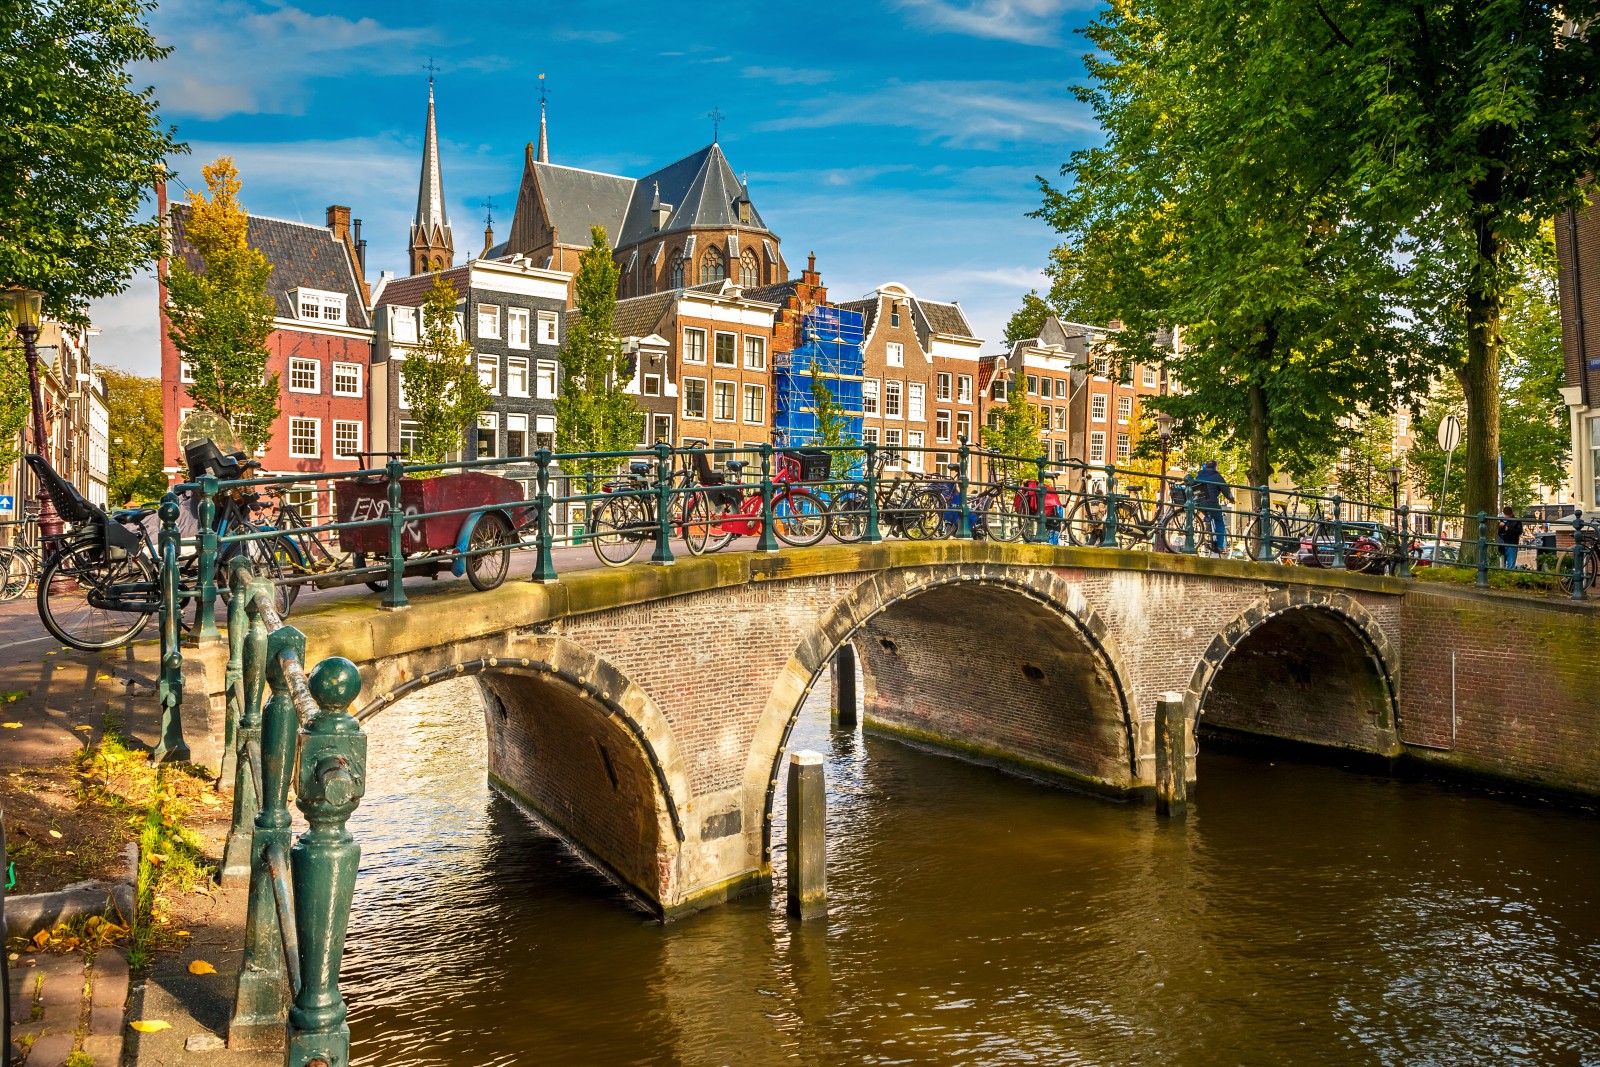 ¡Circuito Países Bajos (Amsterdam, Bruselas, Brujas y Gante)! 8 días y 7 noches en Hoteles 3* con Desayunos + Vuelos + Traslado entre ciudades + Tasas + Tour